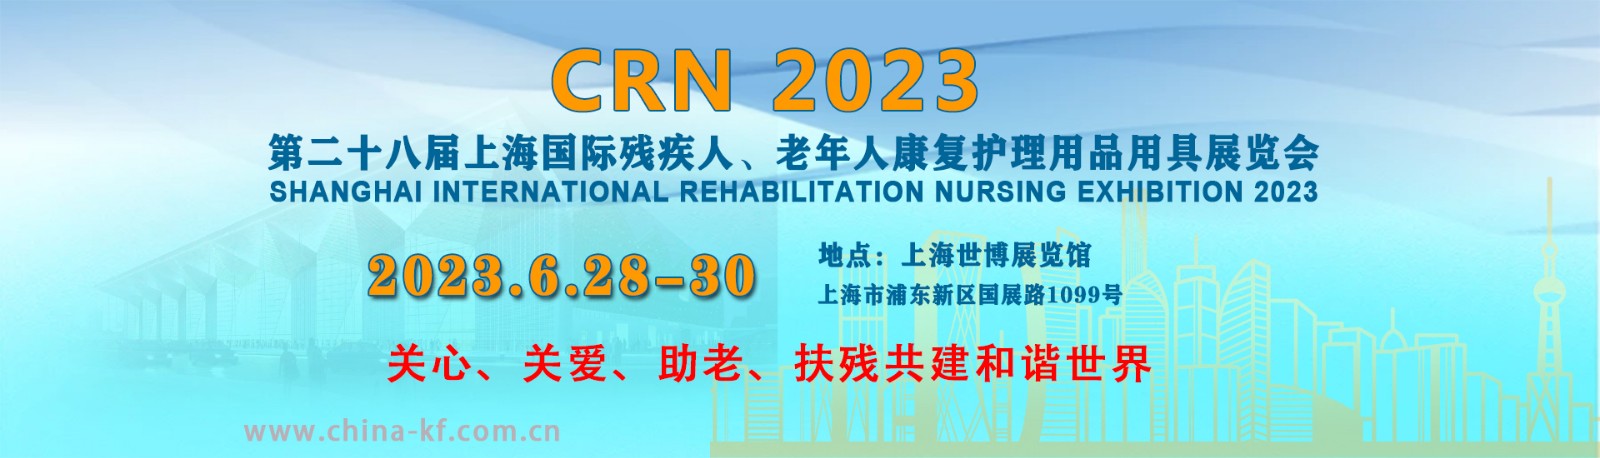 2023上海国际残疾人、老年人康复护理展会助行移动辅具/无障碍展区